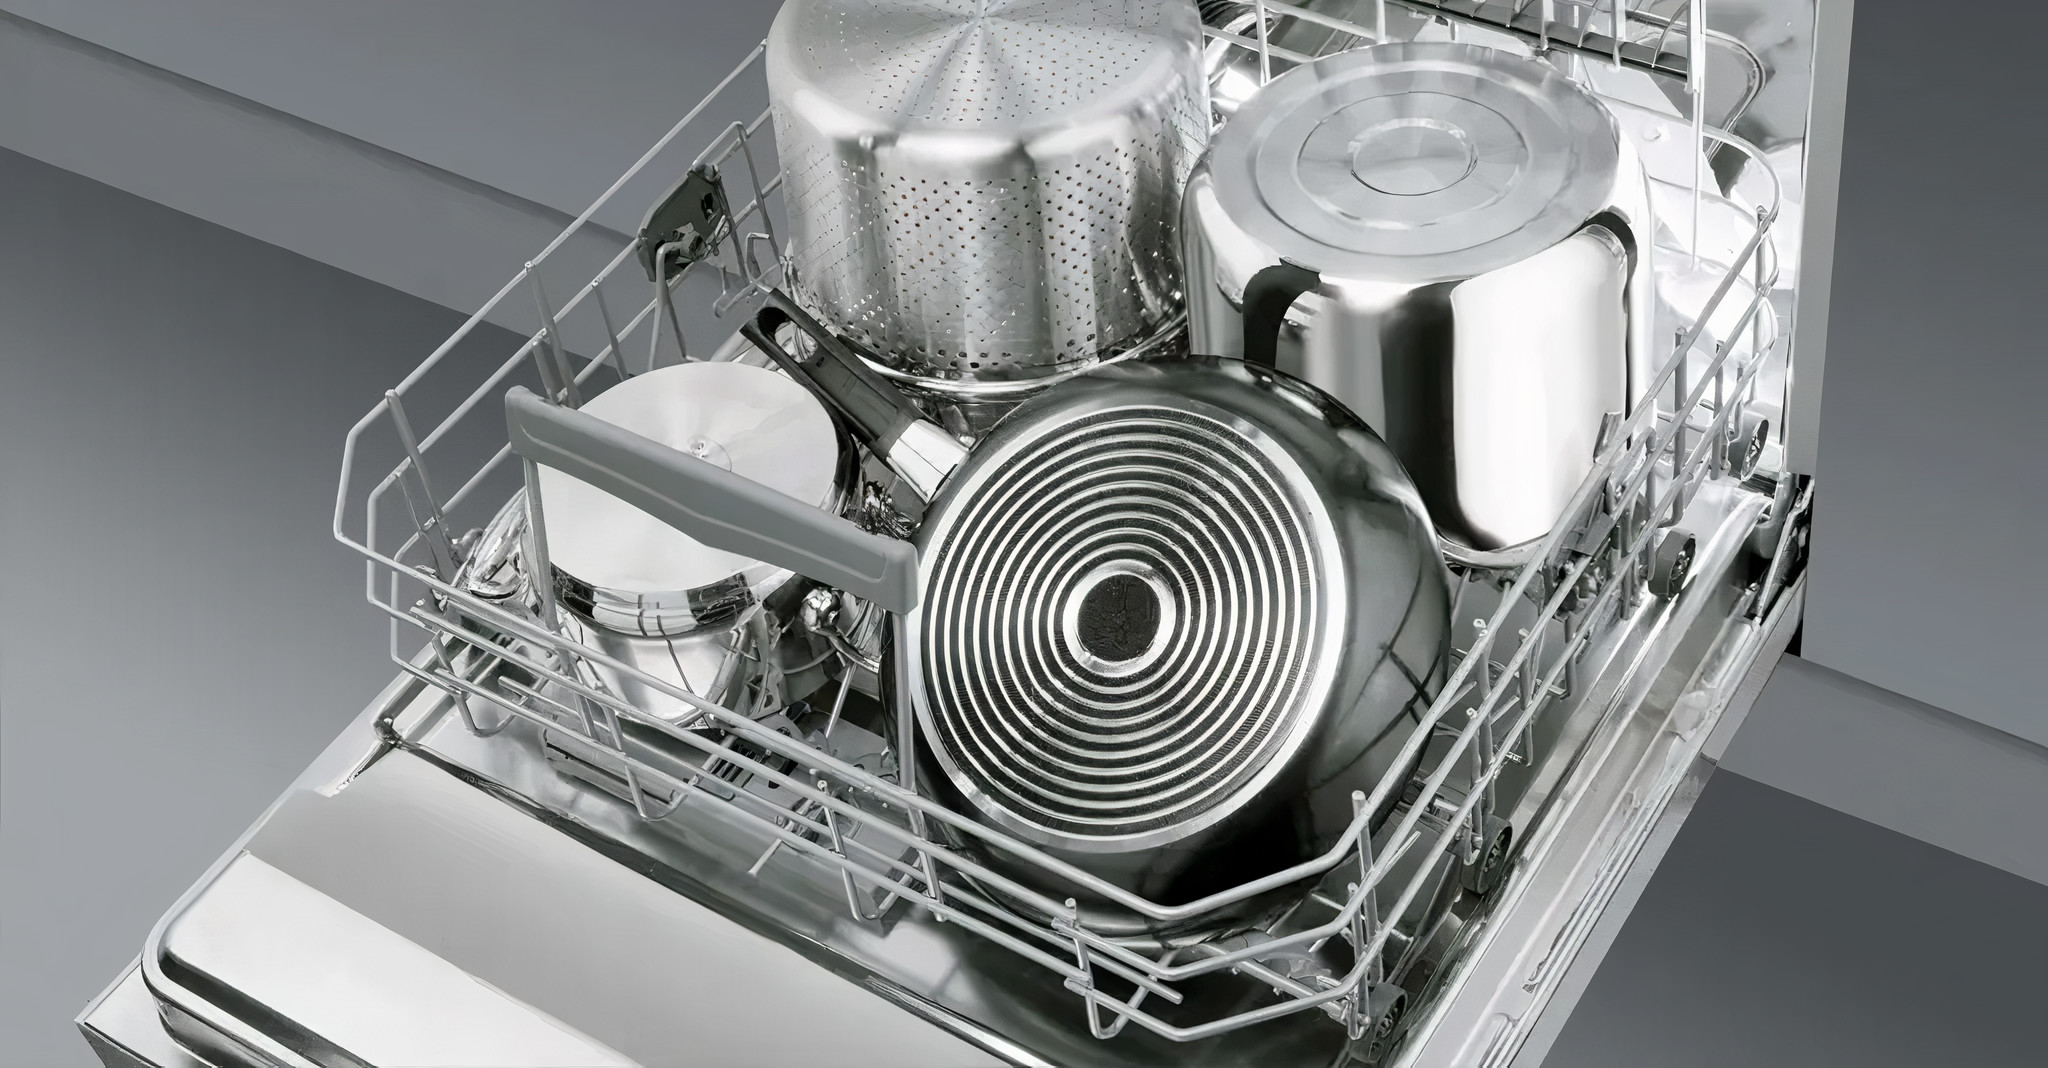 Кастрюля можно мыть в посудомоечной машине. Smeg sta6539l3. Расположение посуды в посудомойке 45 см. Правильная загрузка посудомоечной машины бош. Расположение посуды в посудомоечной машине Bosch 60 см.